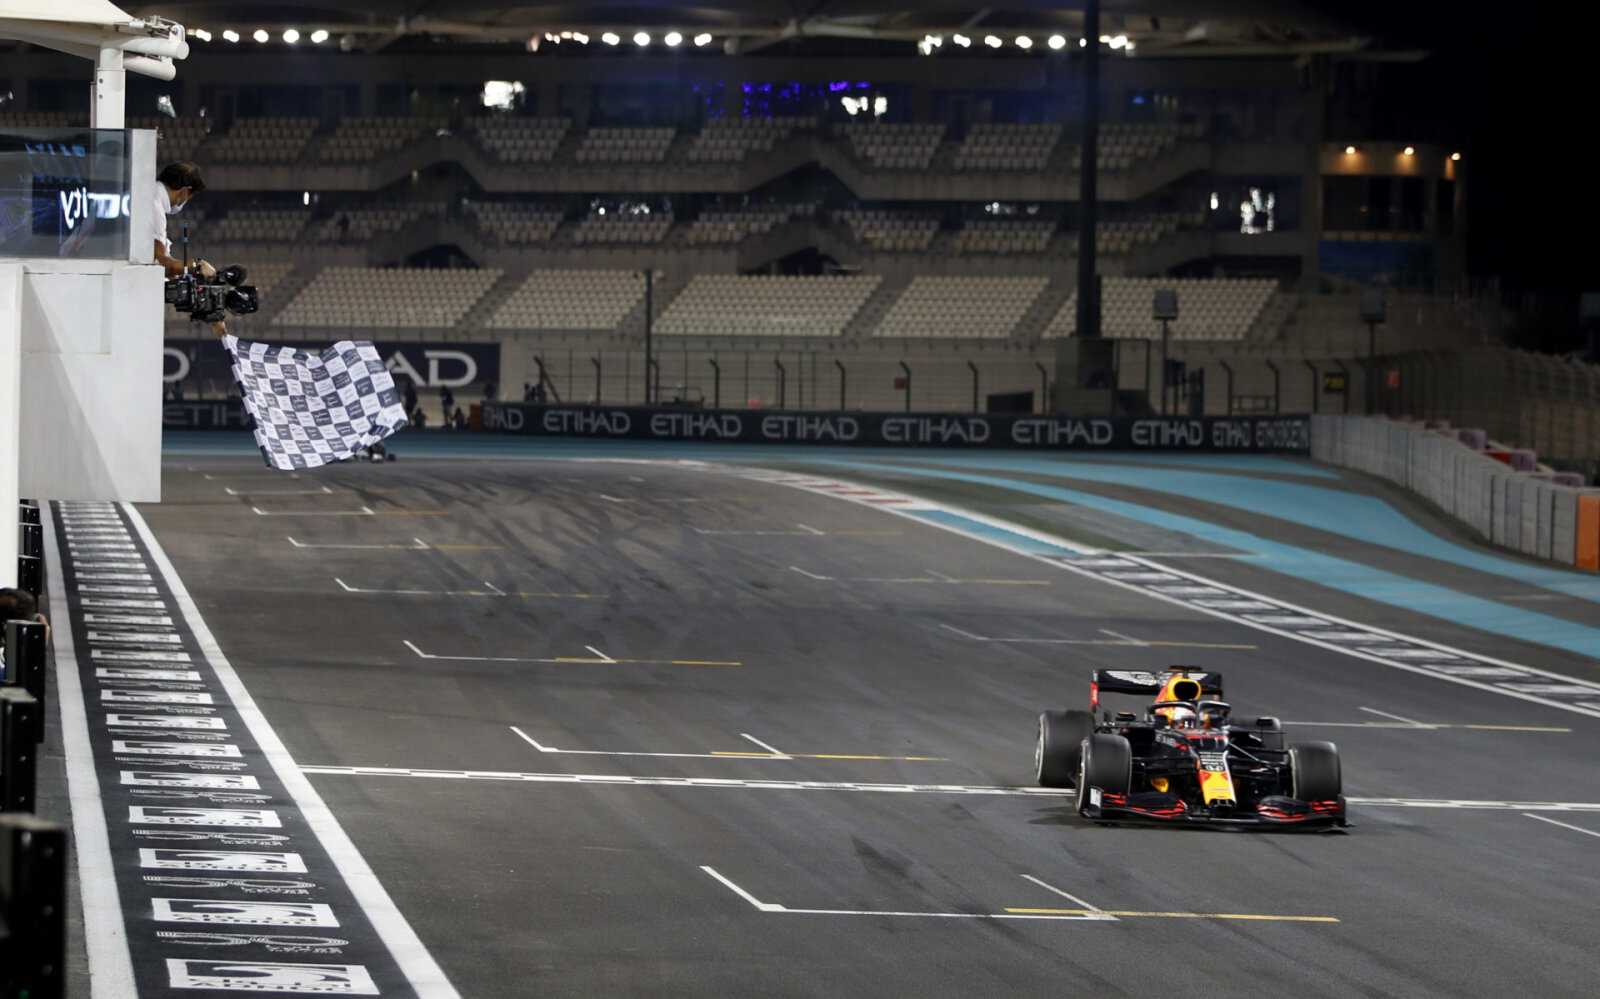 REGARDER: Aperçu des nouveaux changements passionnants de piste F1 pour le GP d'Abu Dhabi